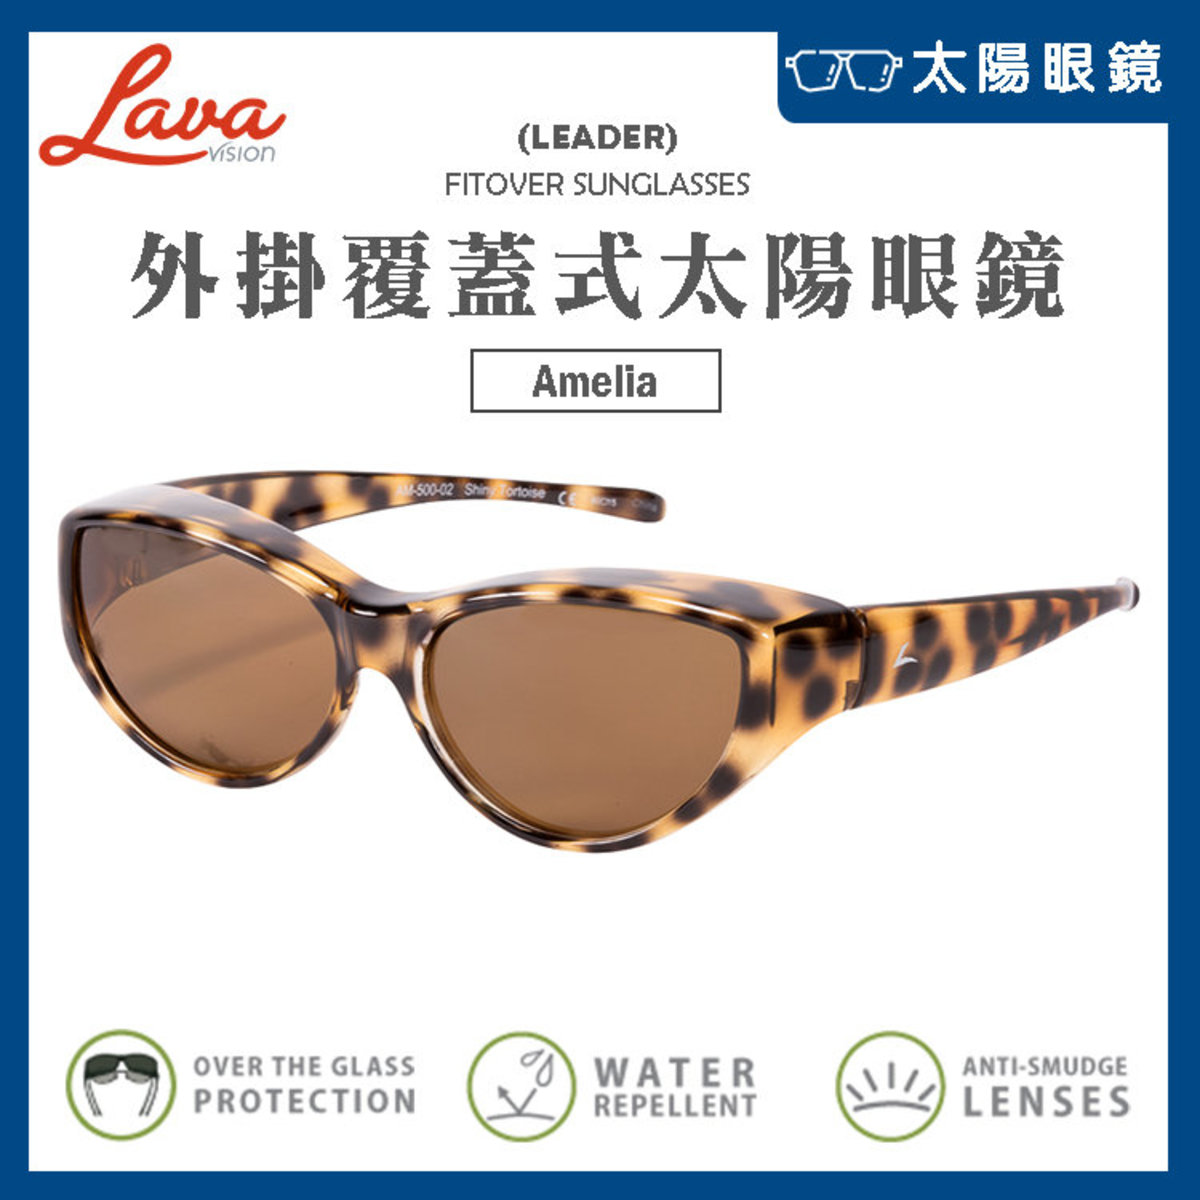 【02亮面玳瑁】外掛覆蓋式太陽眼鏡 - Amelia (Size Medium)